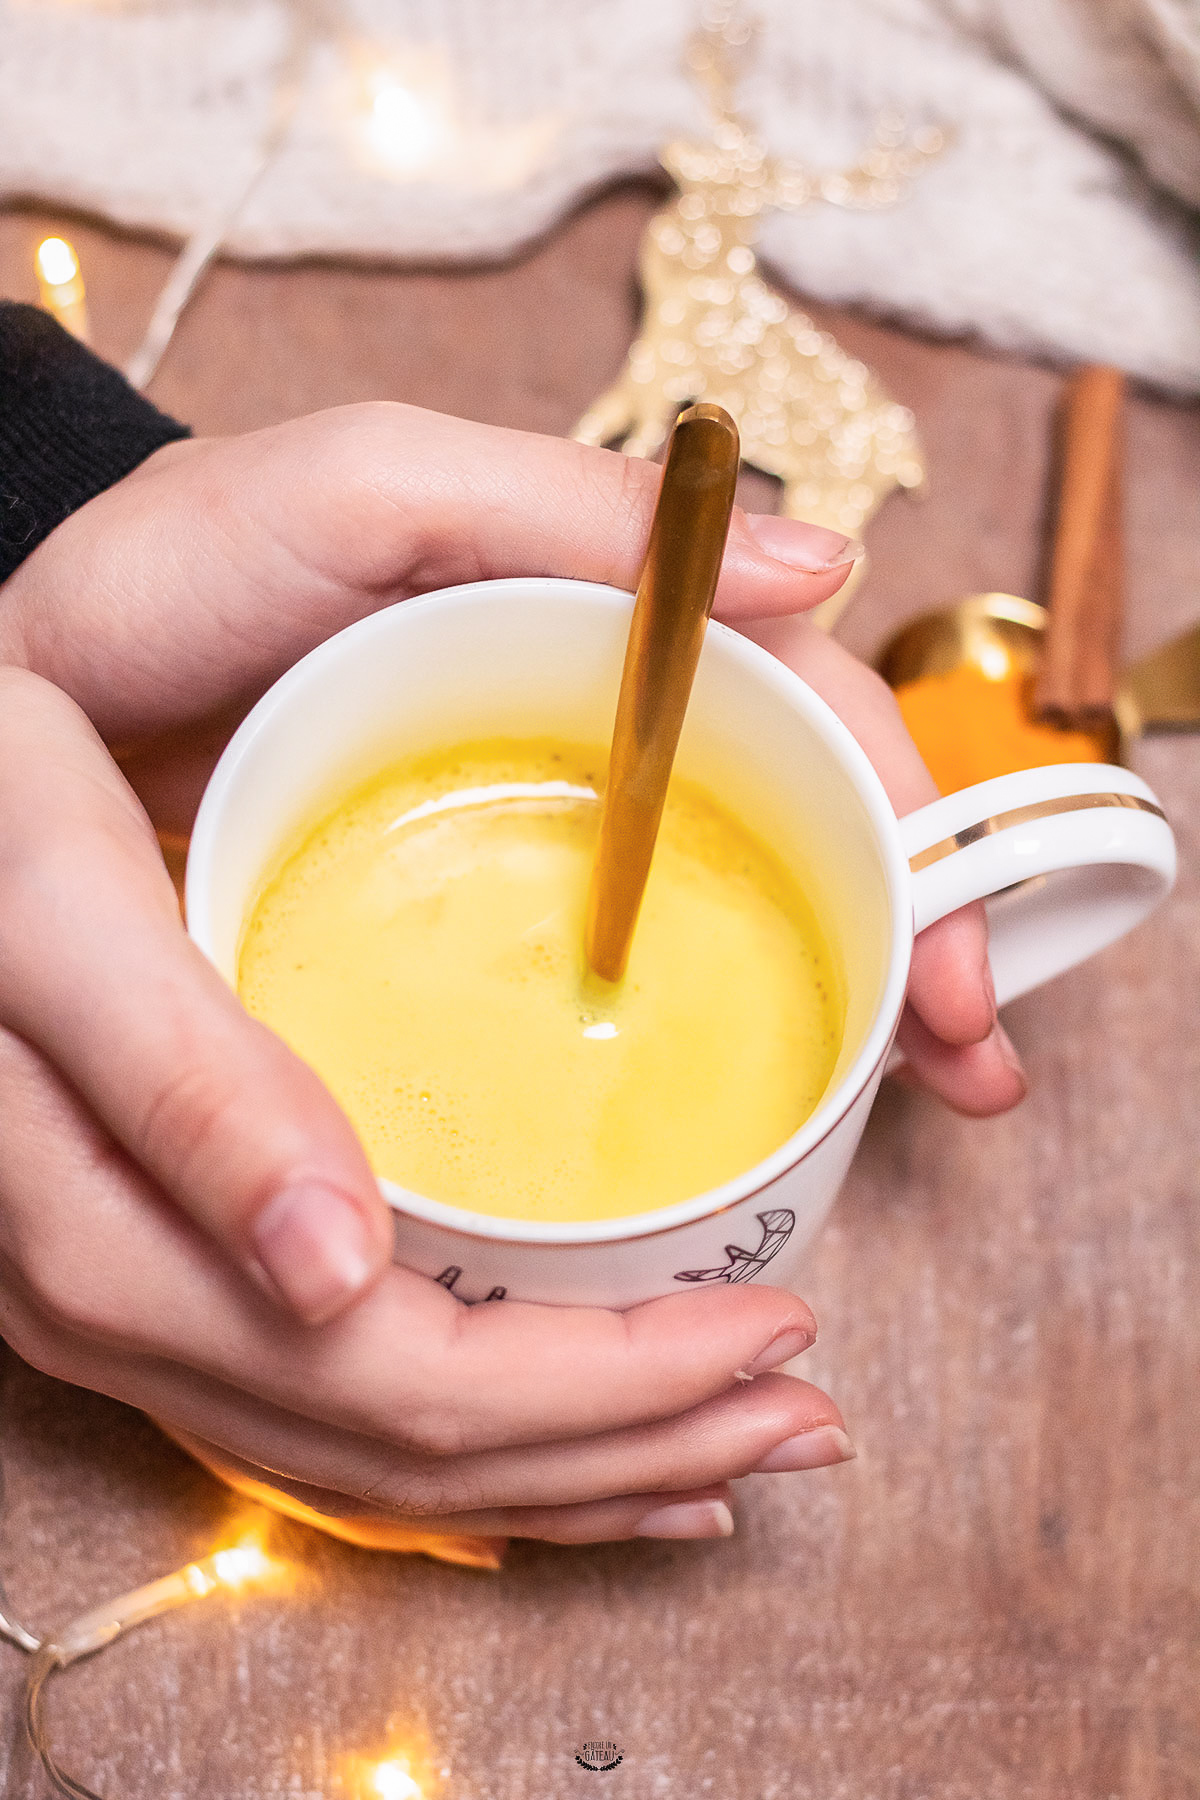 https://www.encoreungateau.com/wp-content/uploads/2018/12/lait-or-curcuma-golden-latte.jpg